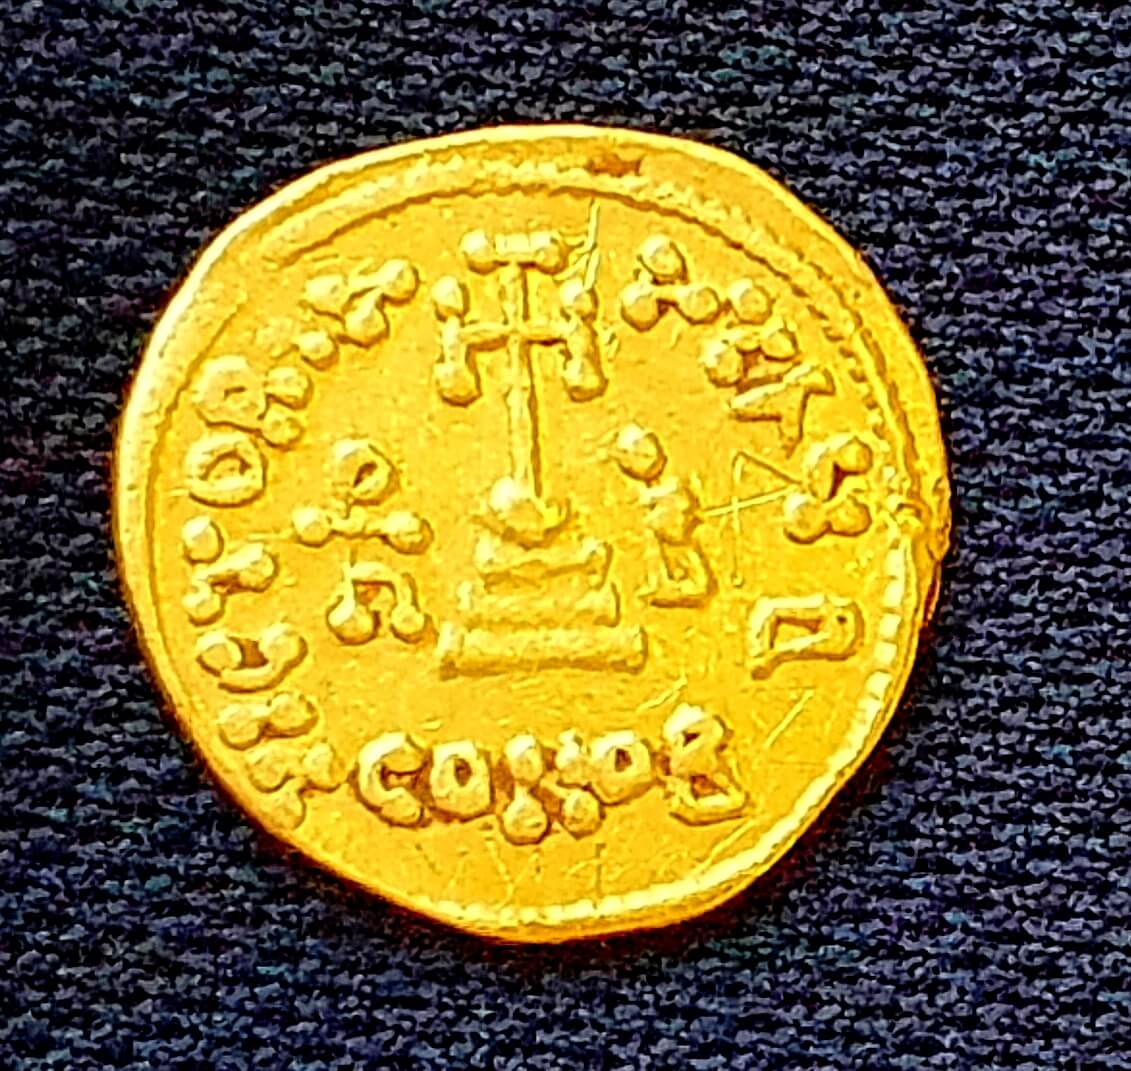 العملة الذهبية التي تم الكشف عنها في التنقيب وعليها نقش يدل على الملكية. تصوير أمير غورزلزاني، هيئة الآثار